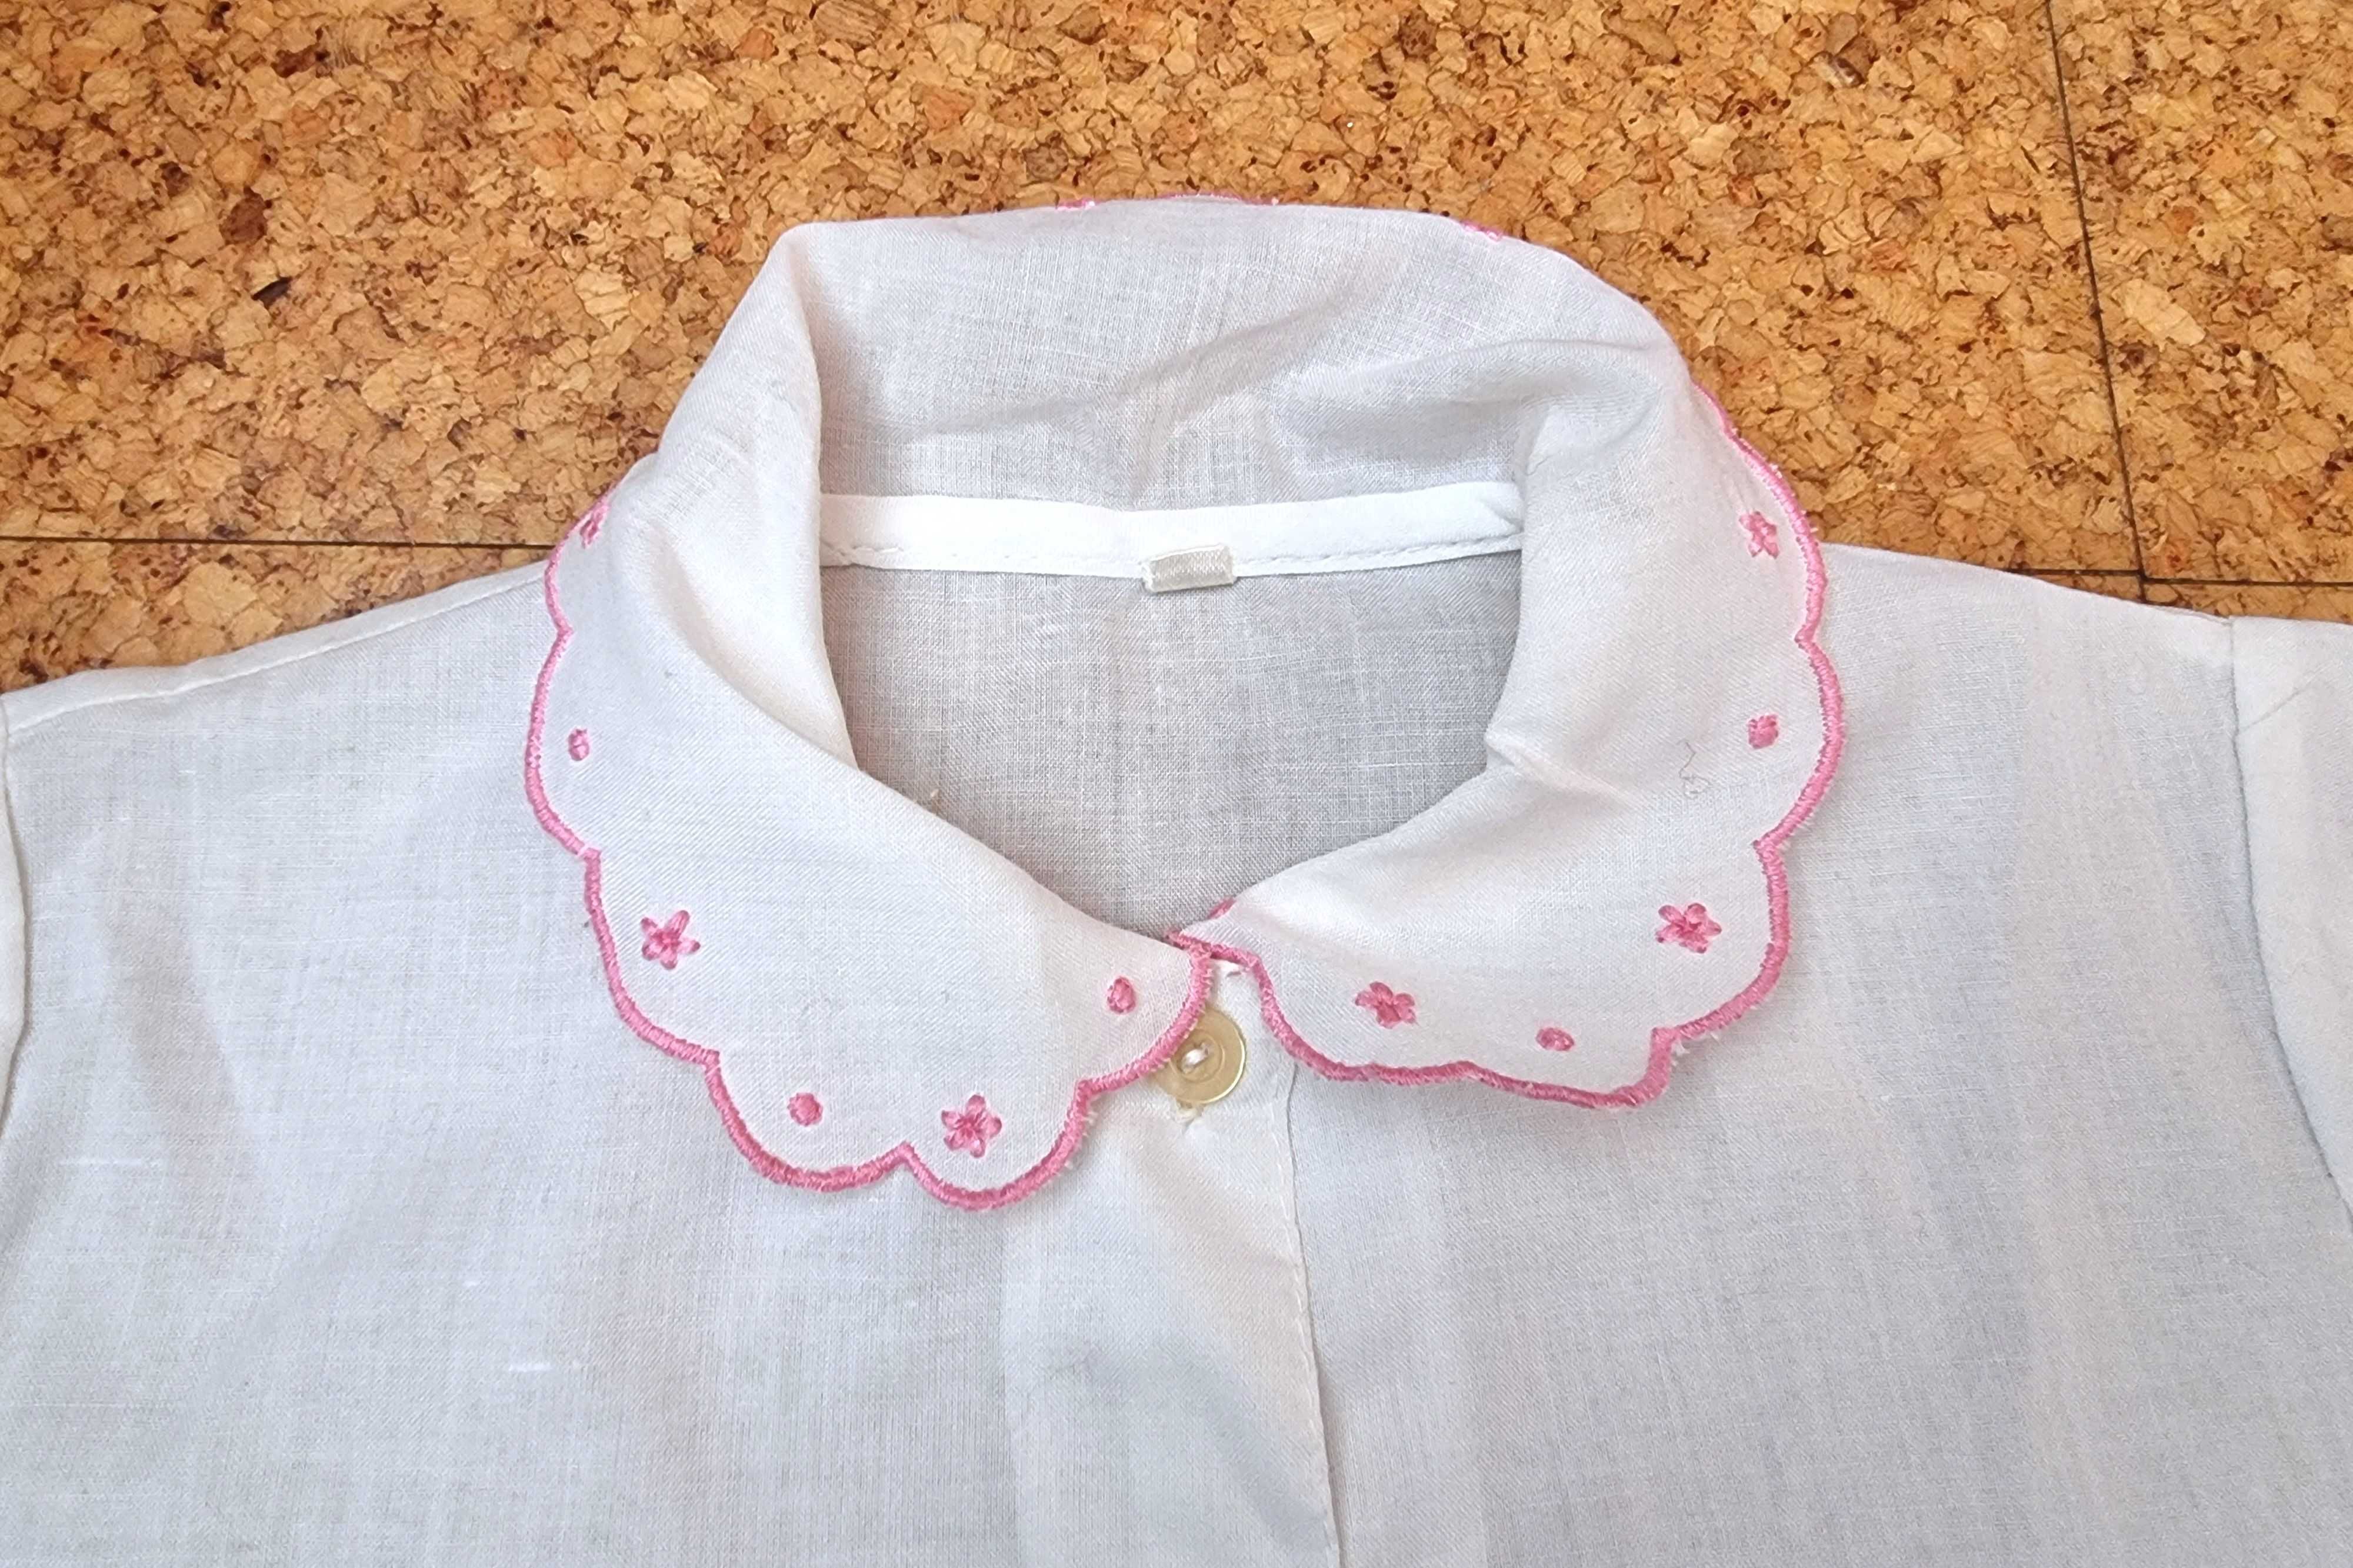 Camisa de manga curta branca com detalhes rosa, 3 anos